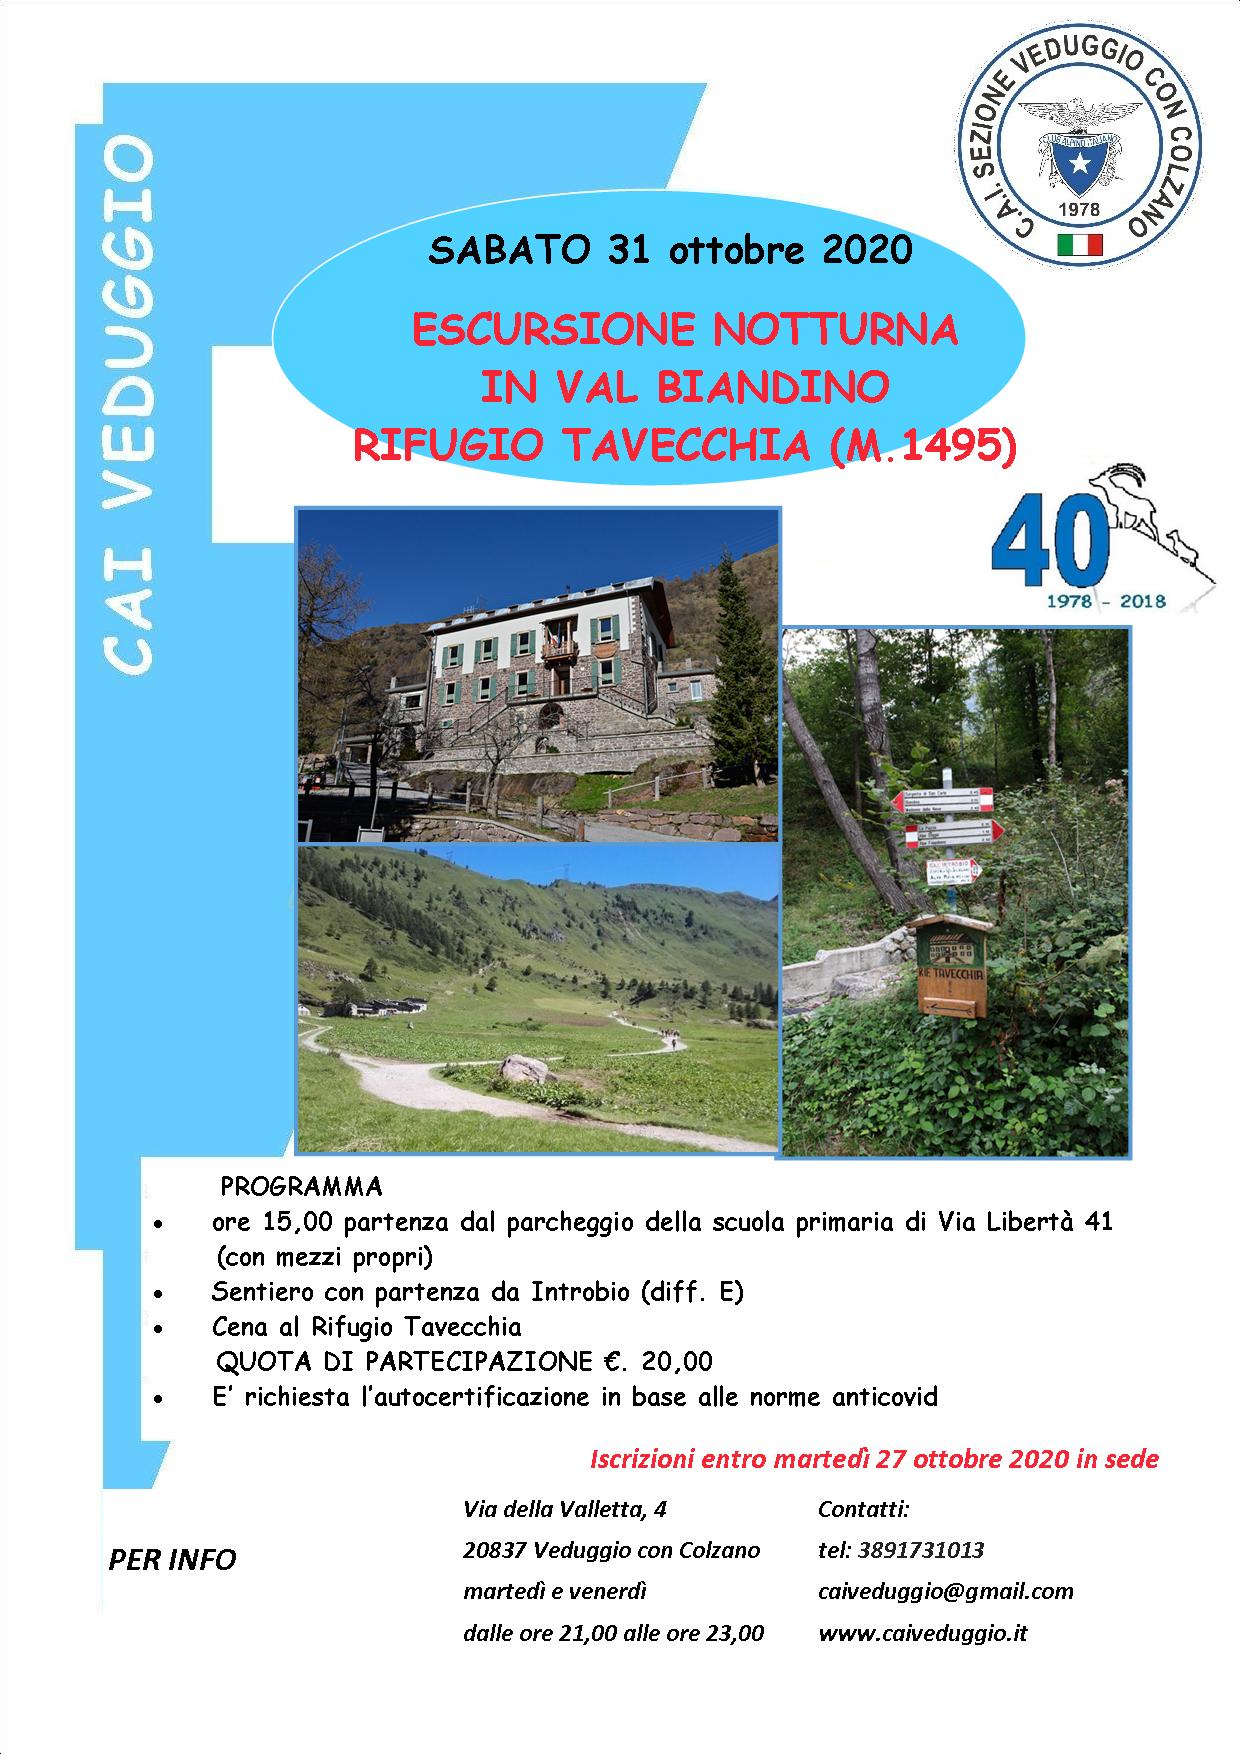 Sabato 31 ottobre 2020 – Escursione notturna in Val Biandino – Rifugio Tavecchia